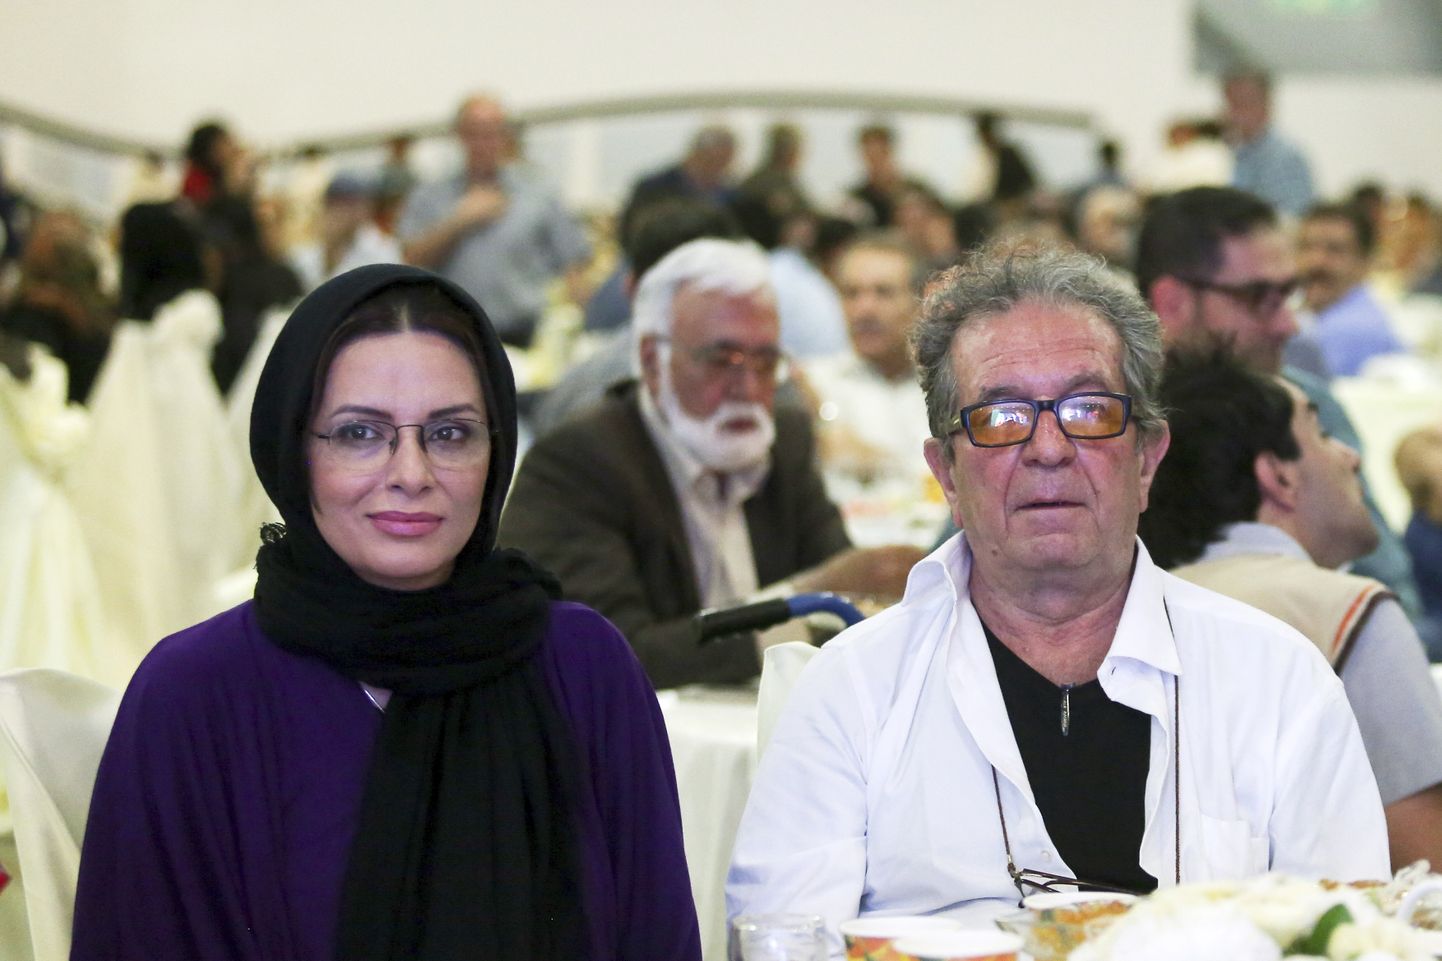 Iraani filmirežissöör Dariush Mehrjui ja tema naine Vahideh Mohammadifar 2015. aastal Teheranis toimunud filmiüritusel.